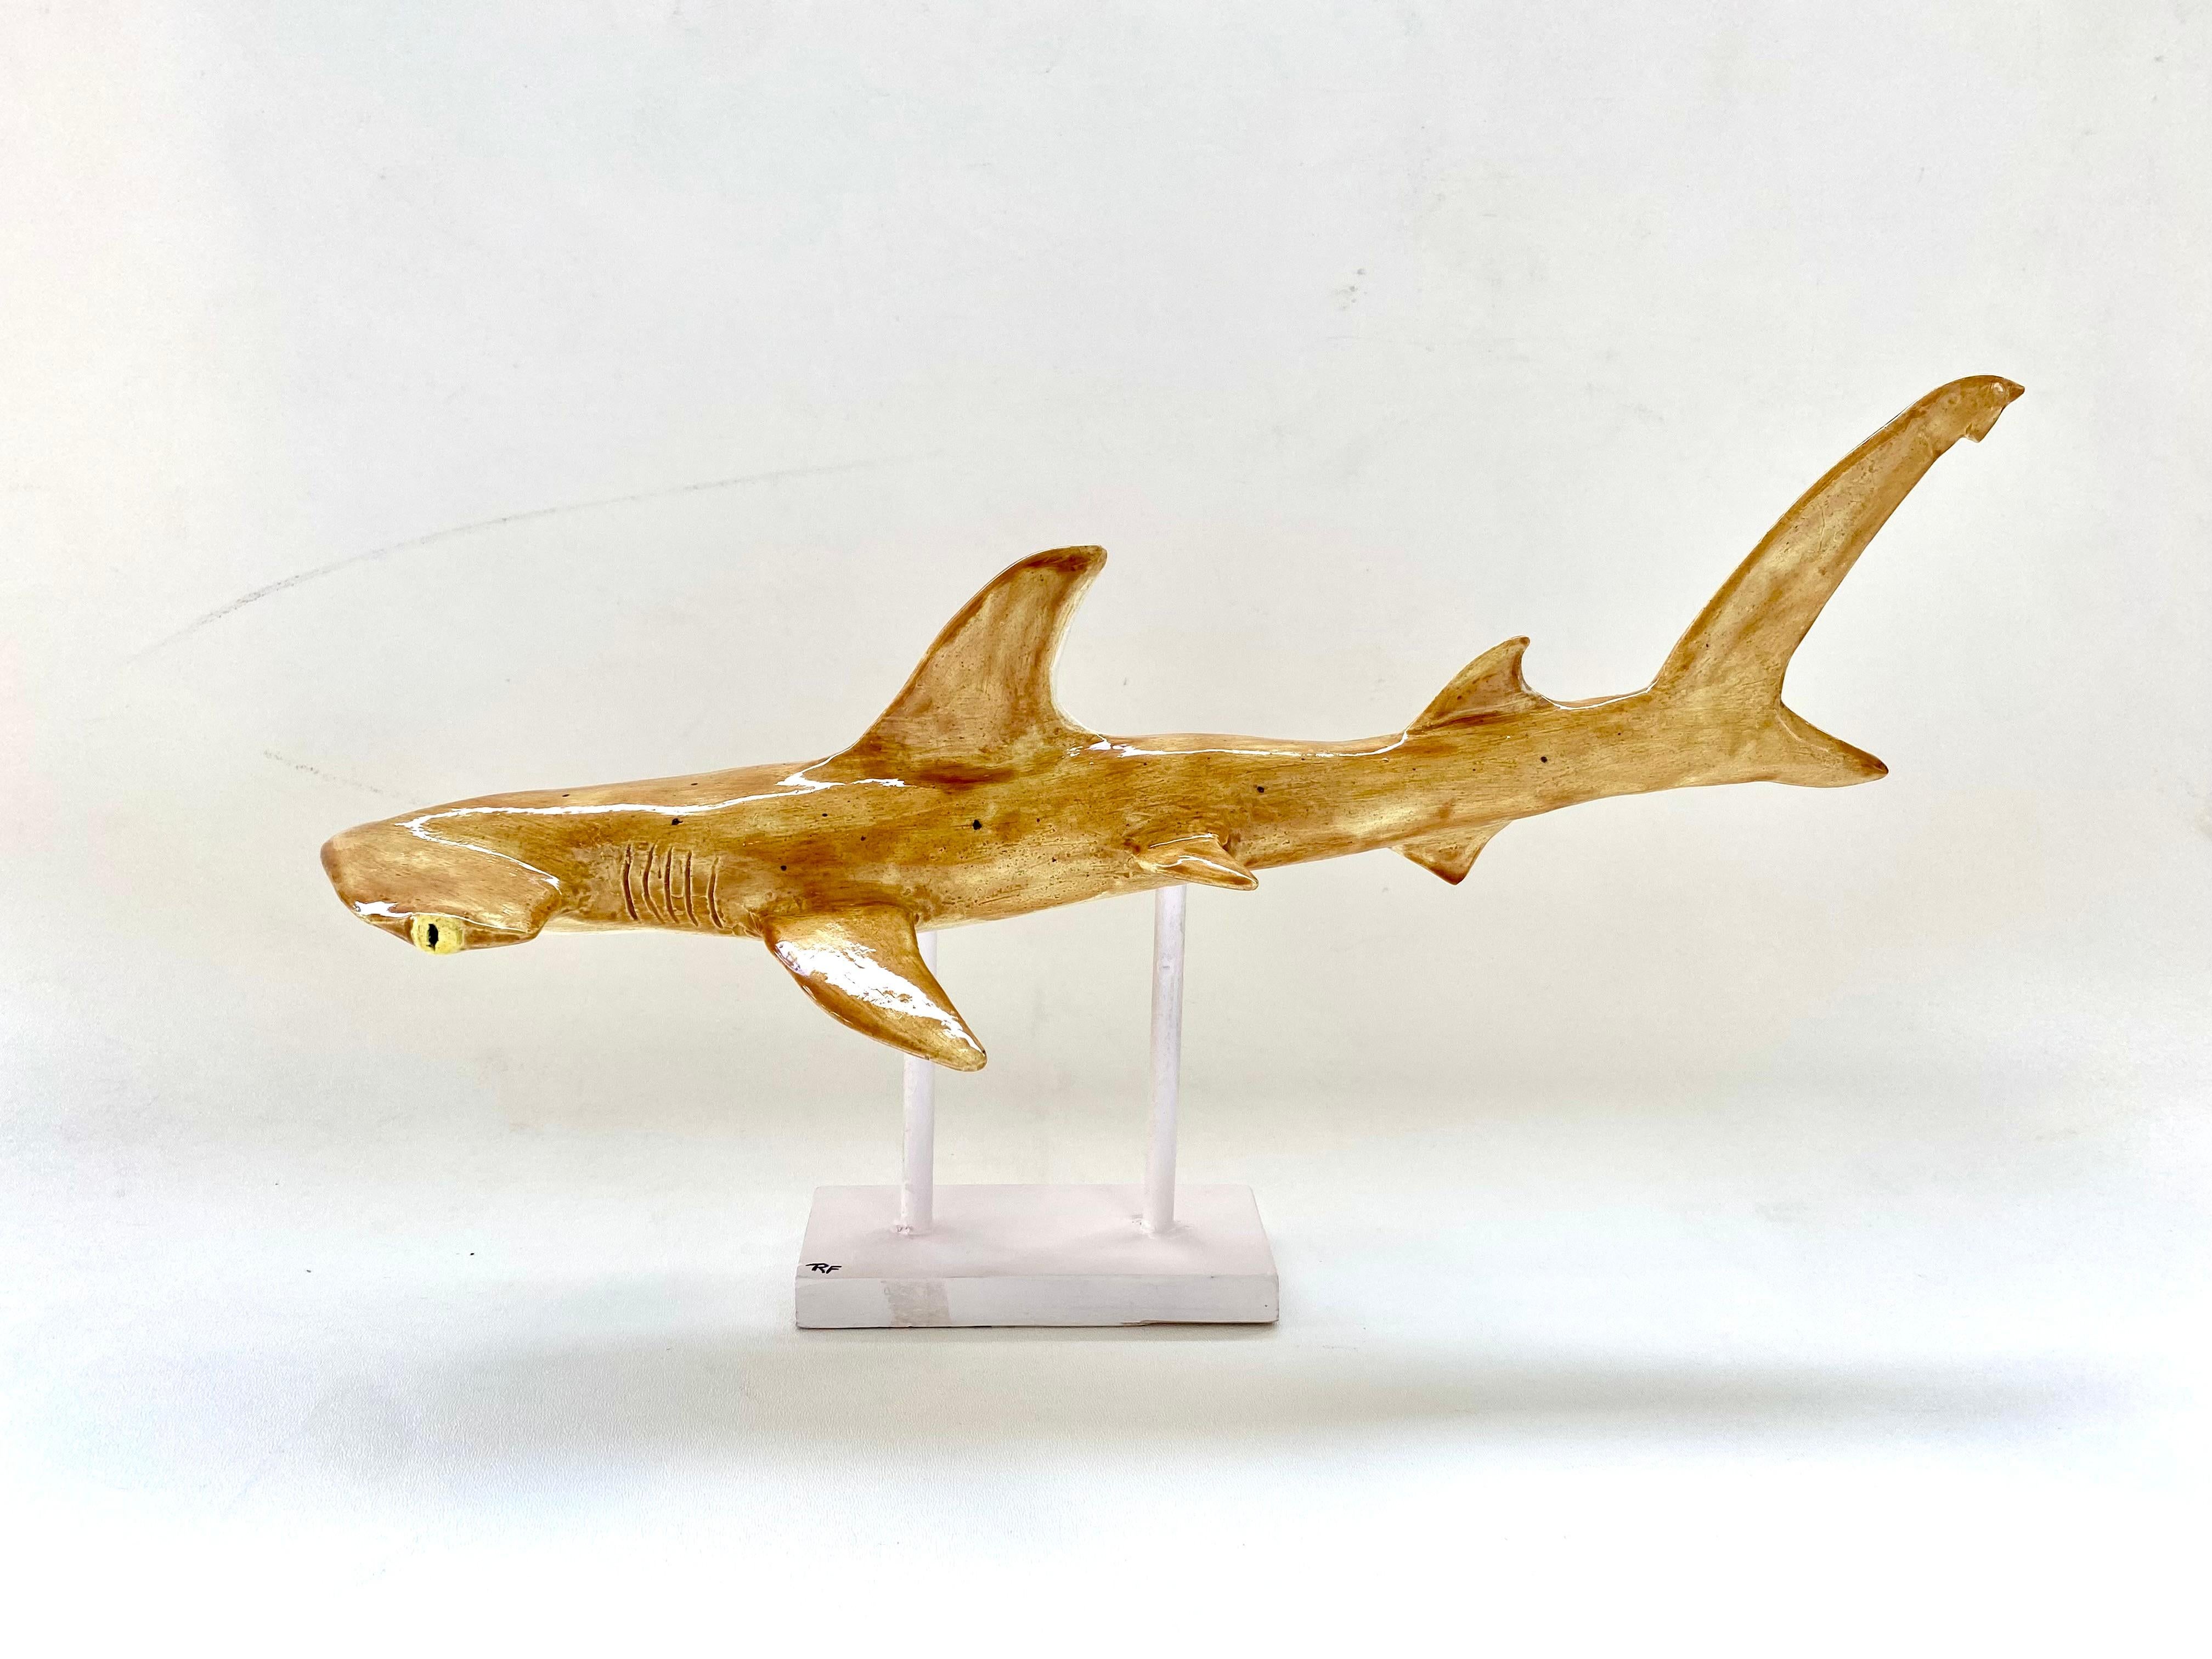 Sculpture Hand Made en céramique émaillée Requin marteau sur Stand par Rexx Fischer 

Nous proposons à la vente un requin marteau sculptural en céramique émaillée, fait à la main, sur pied, par Rexx Fischer. Cette pièce a été inspirée par les Keys